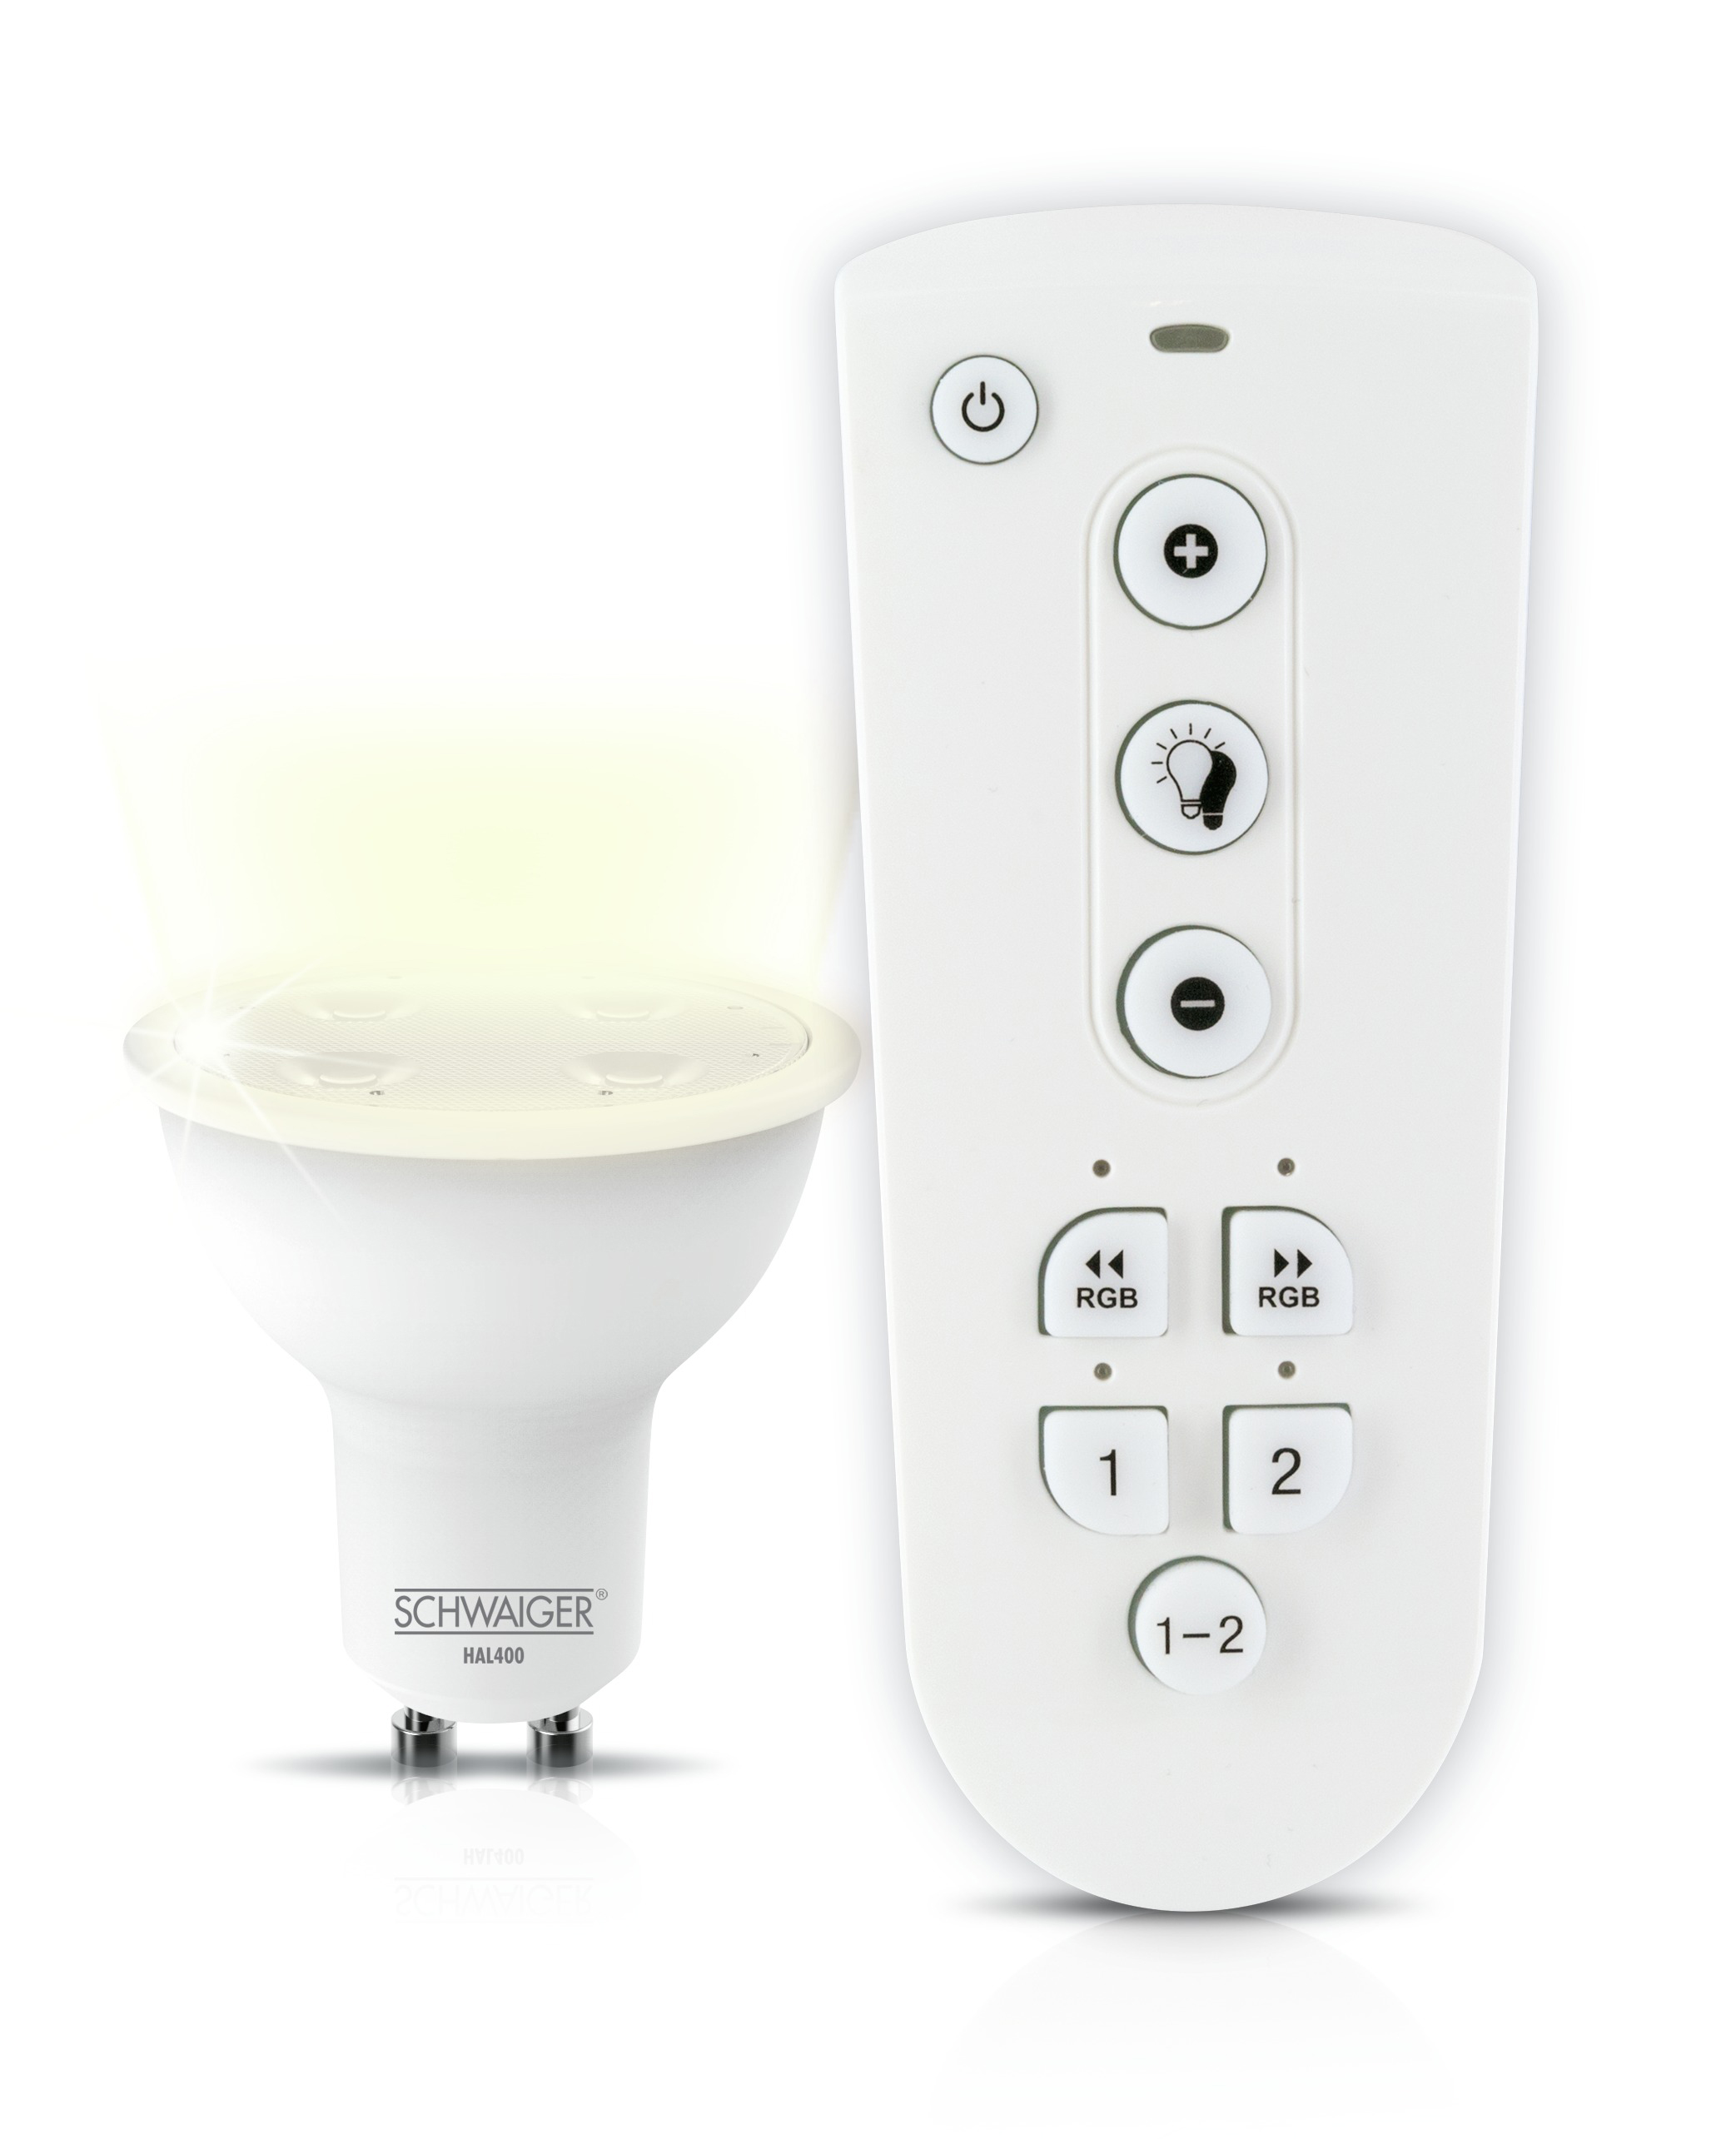 LED (GU10) als Warmweiß SCHWAIGER -HALSET400- Leuchtmittel Set dimmbares Wohnlicht